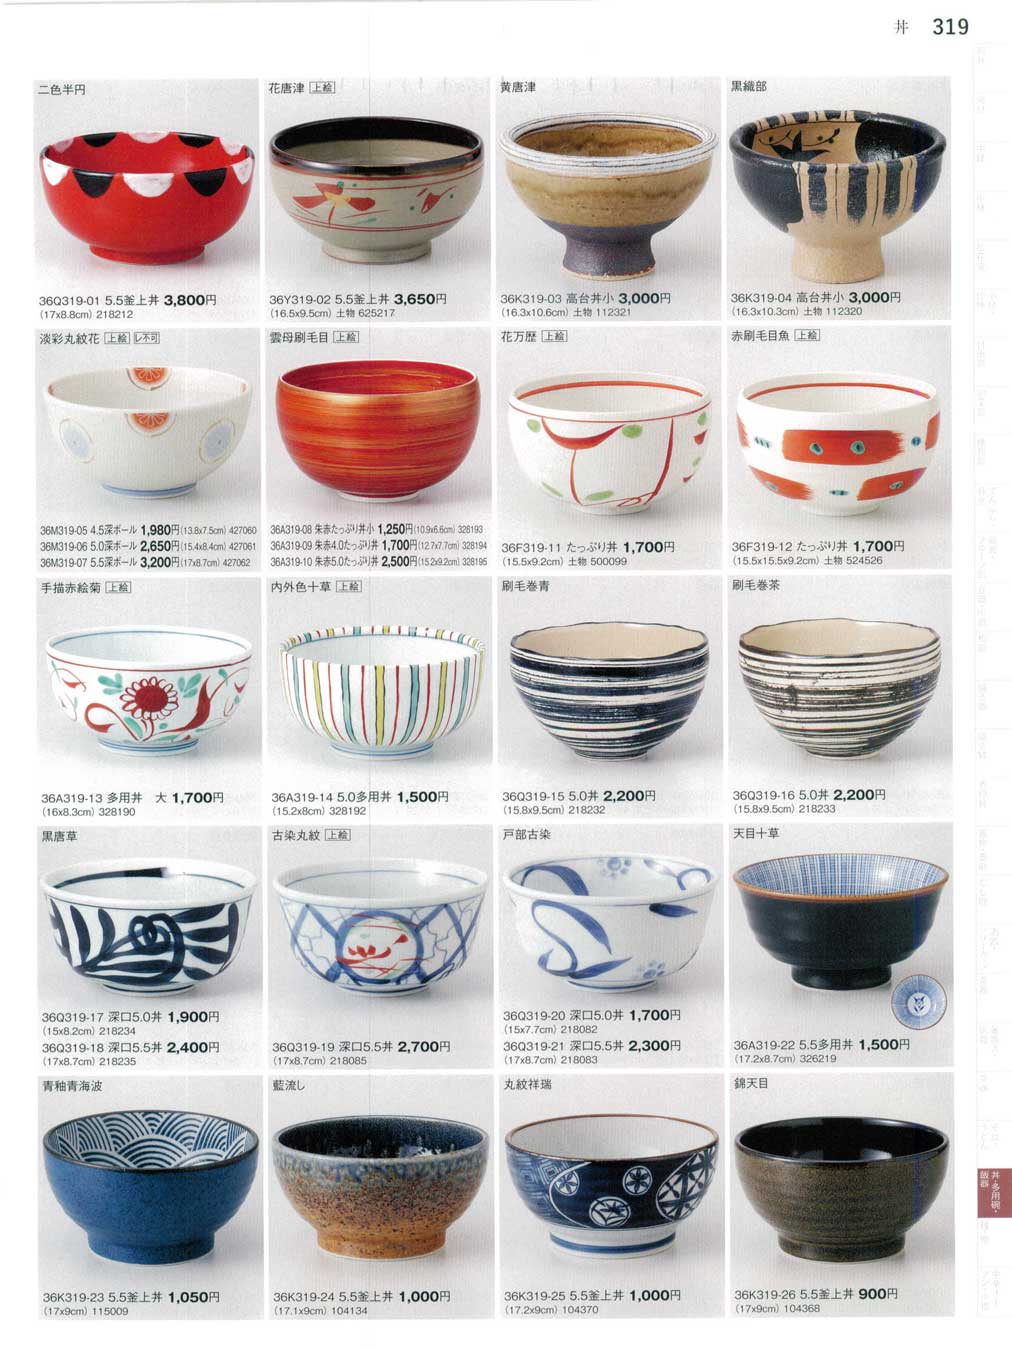 食器 丼Porcelain Bowl, Donburi まごころ３６－319ページ